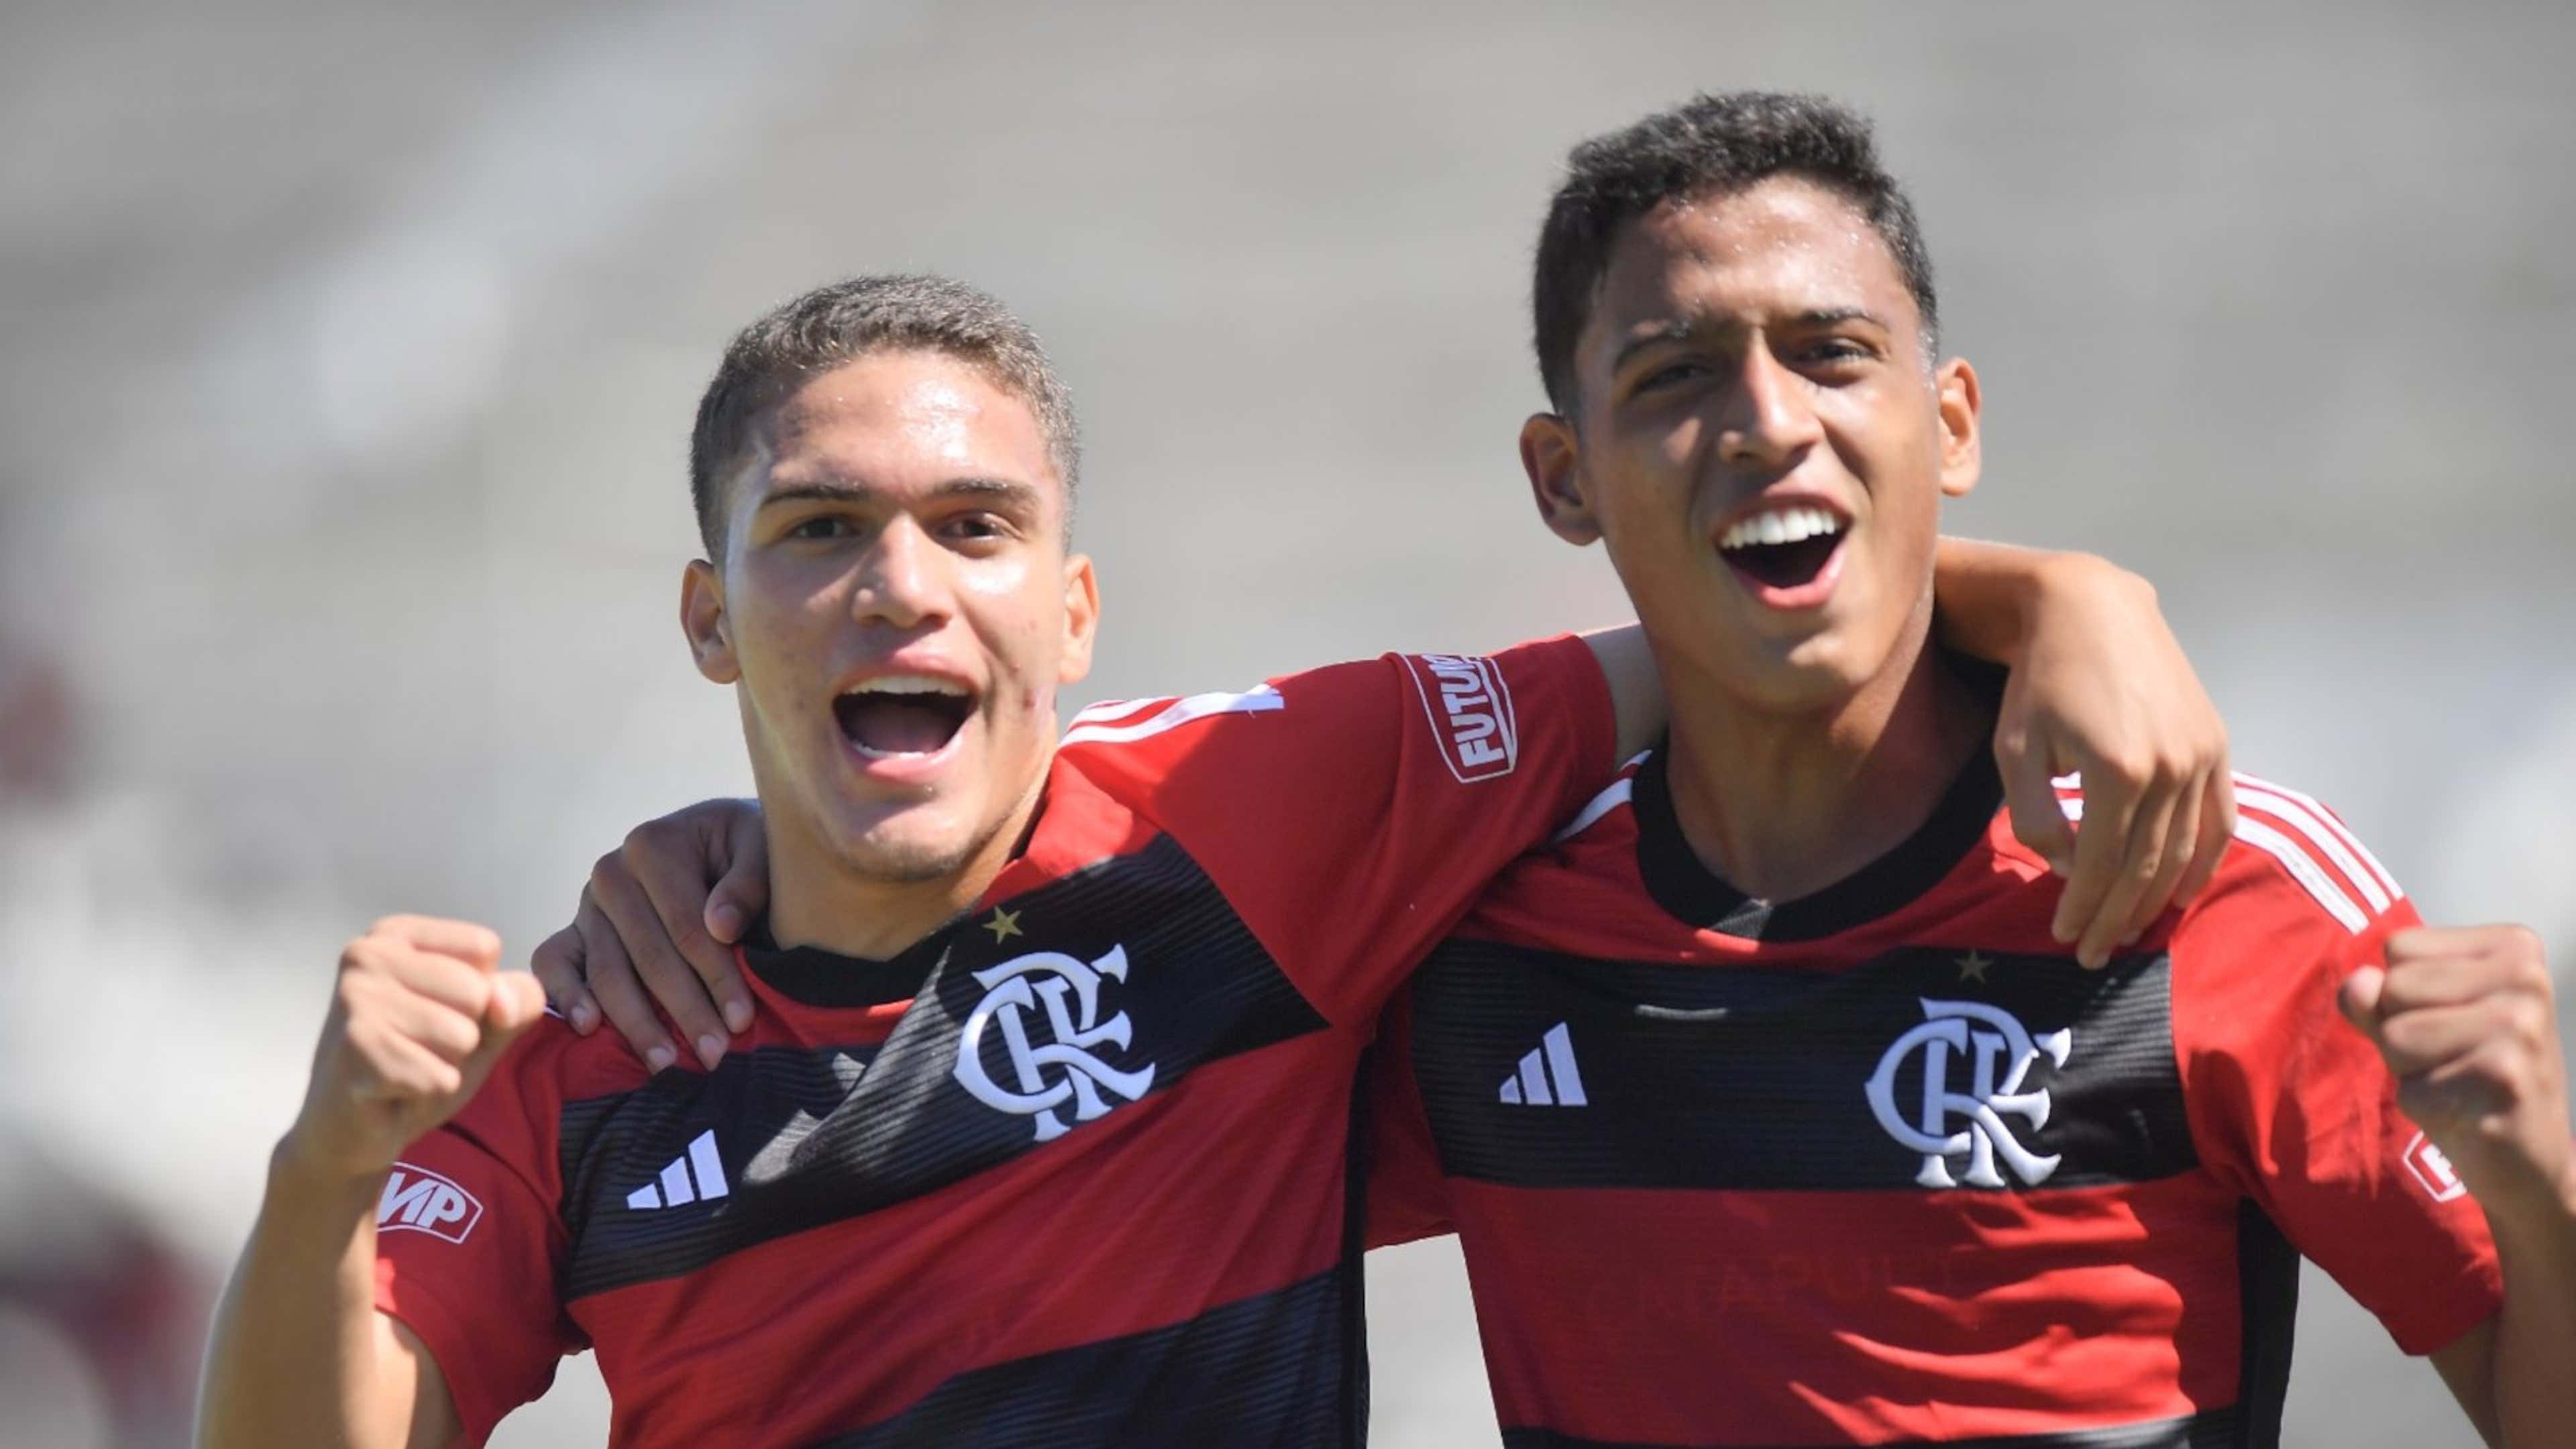 Onde assistir Flamengo x RB Bragantino AO VIVO pelo Brasileirão